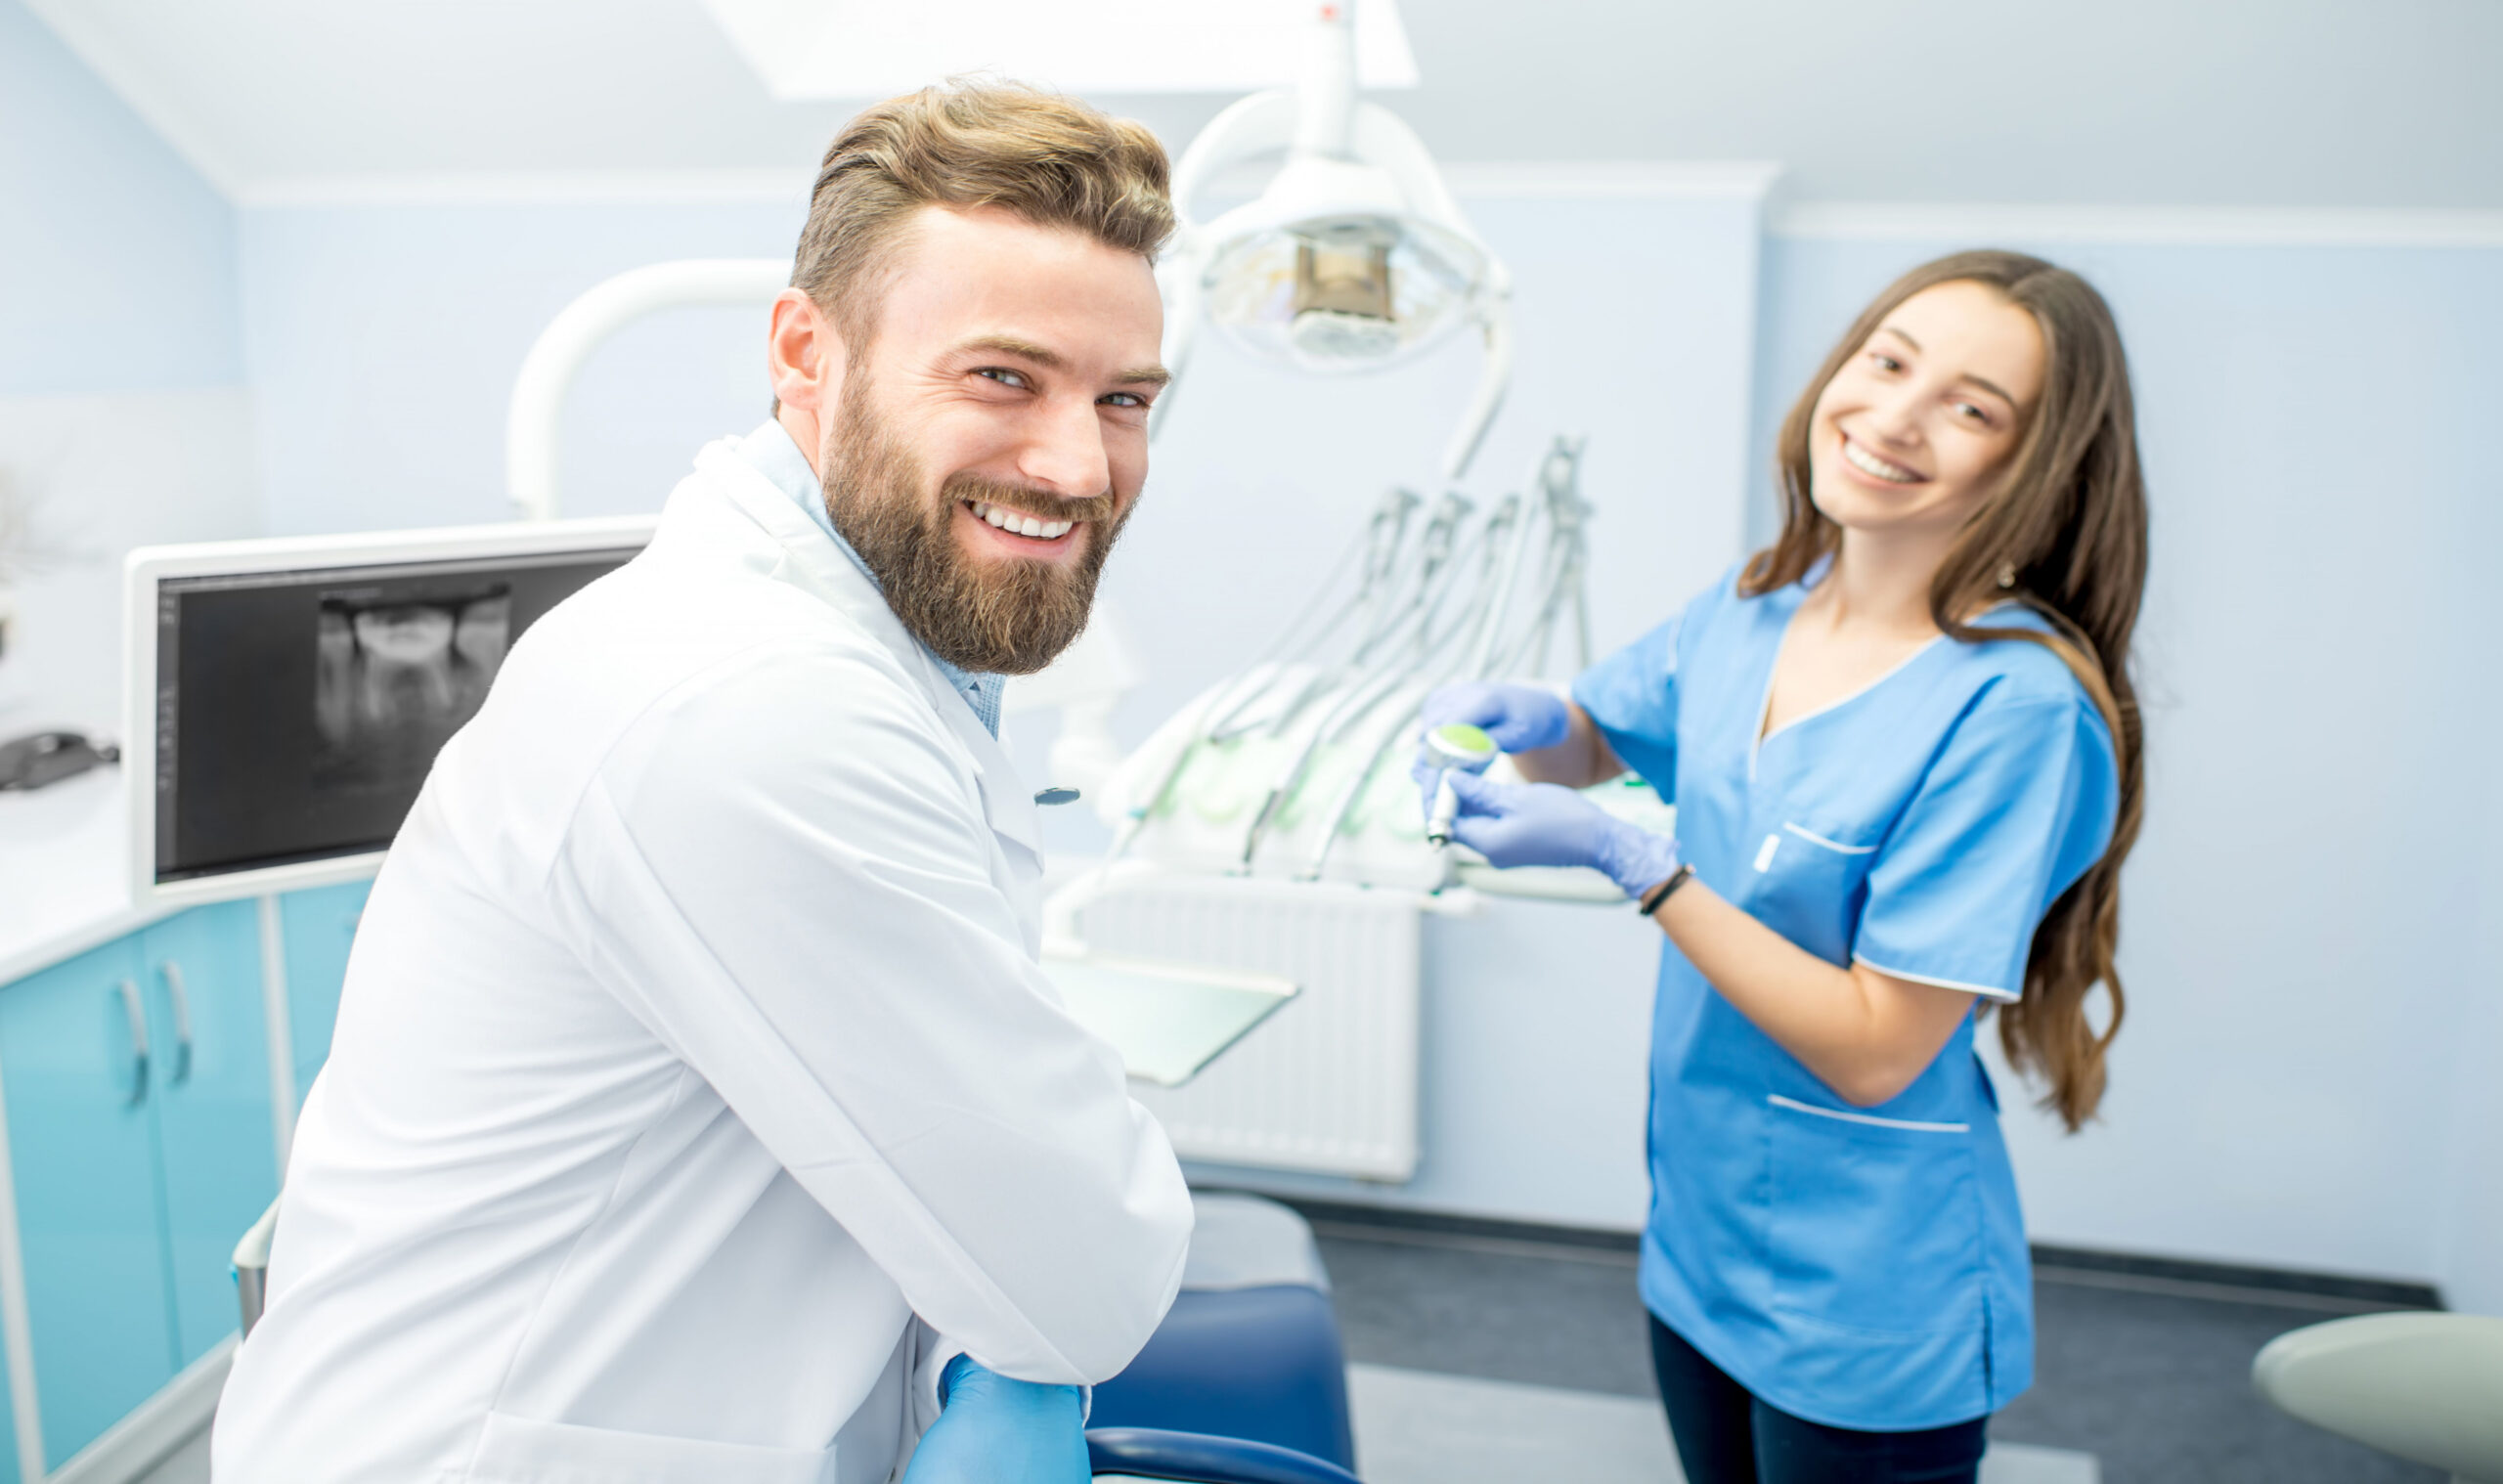 Unlicensed Dental Assistant Jobs - Unlicensed Dental Assistant Jobs: A Risky Career Choice